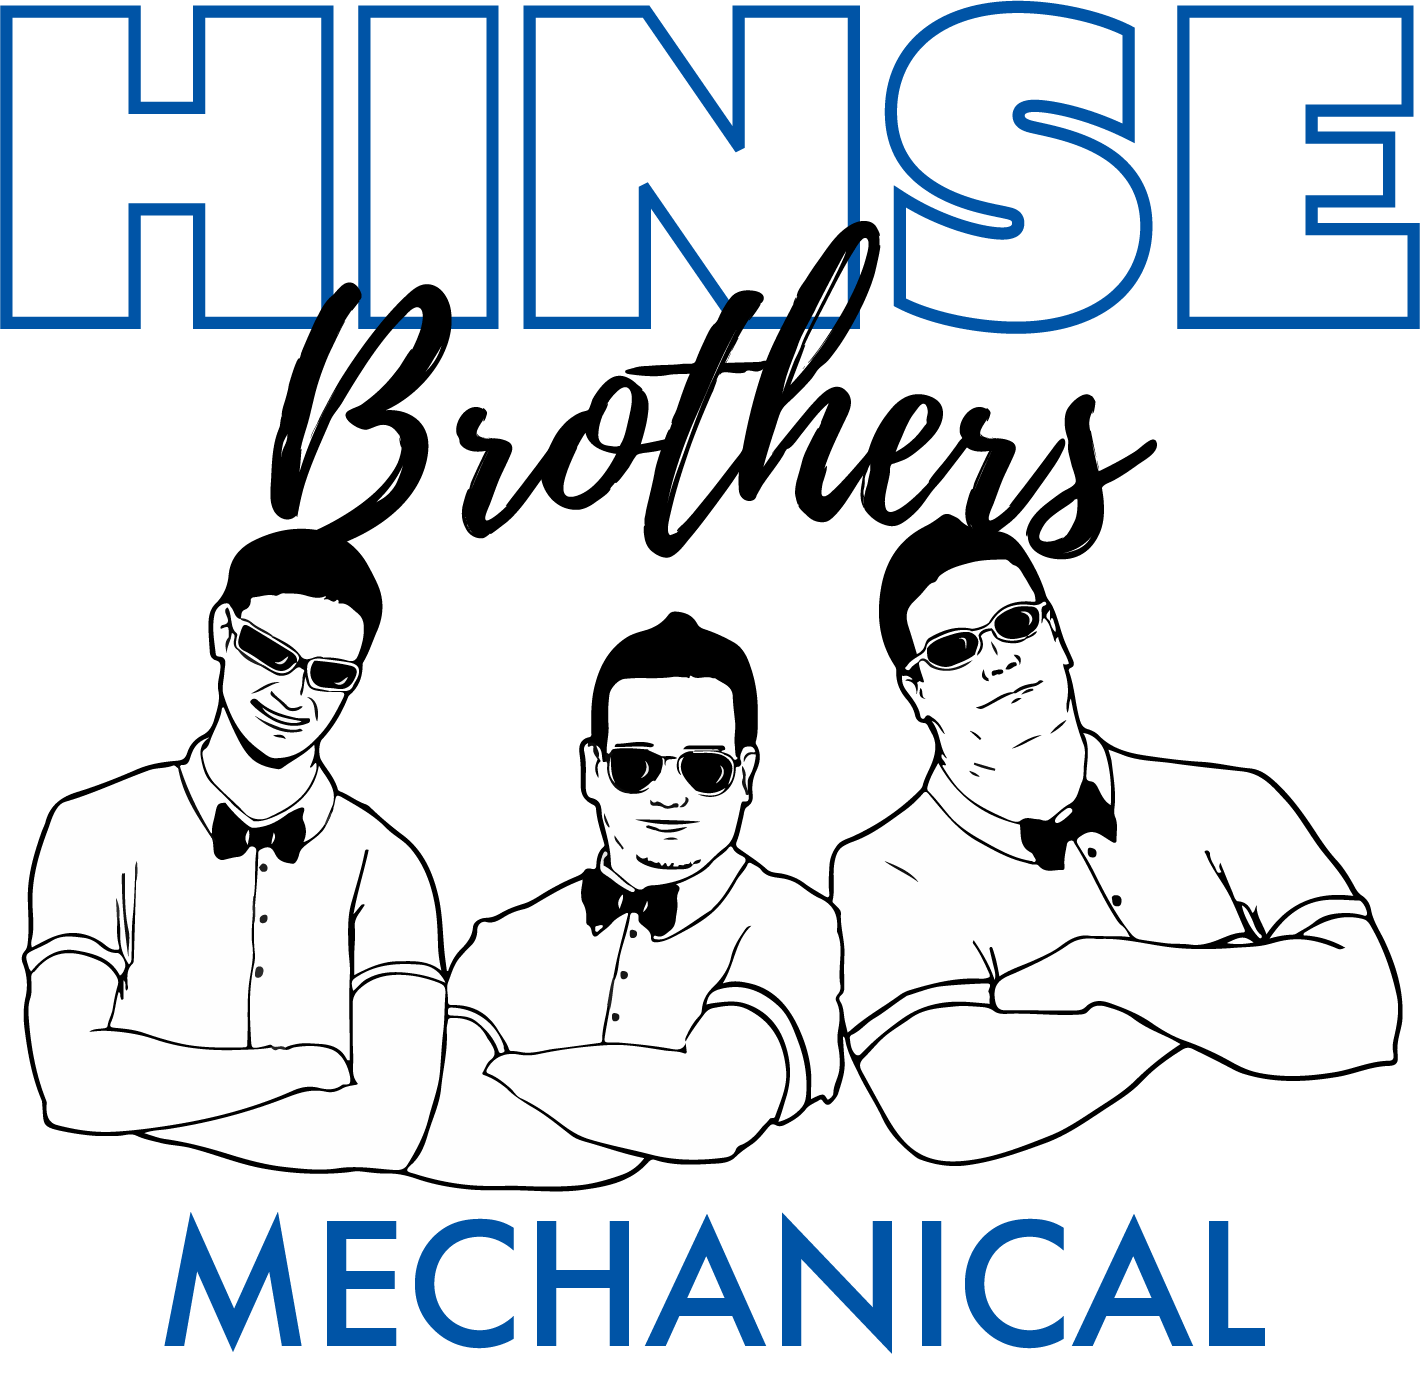 2022.02.07 Hinse Bros Logo Rebuild